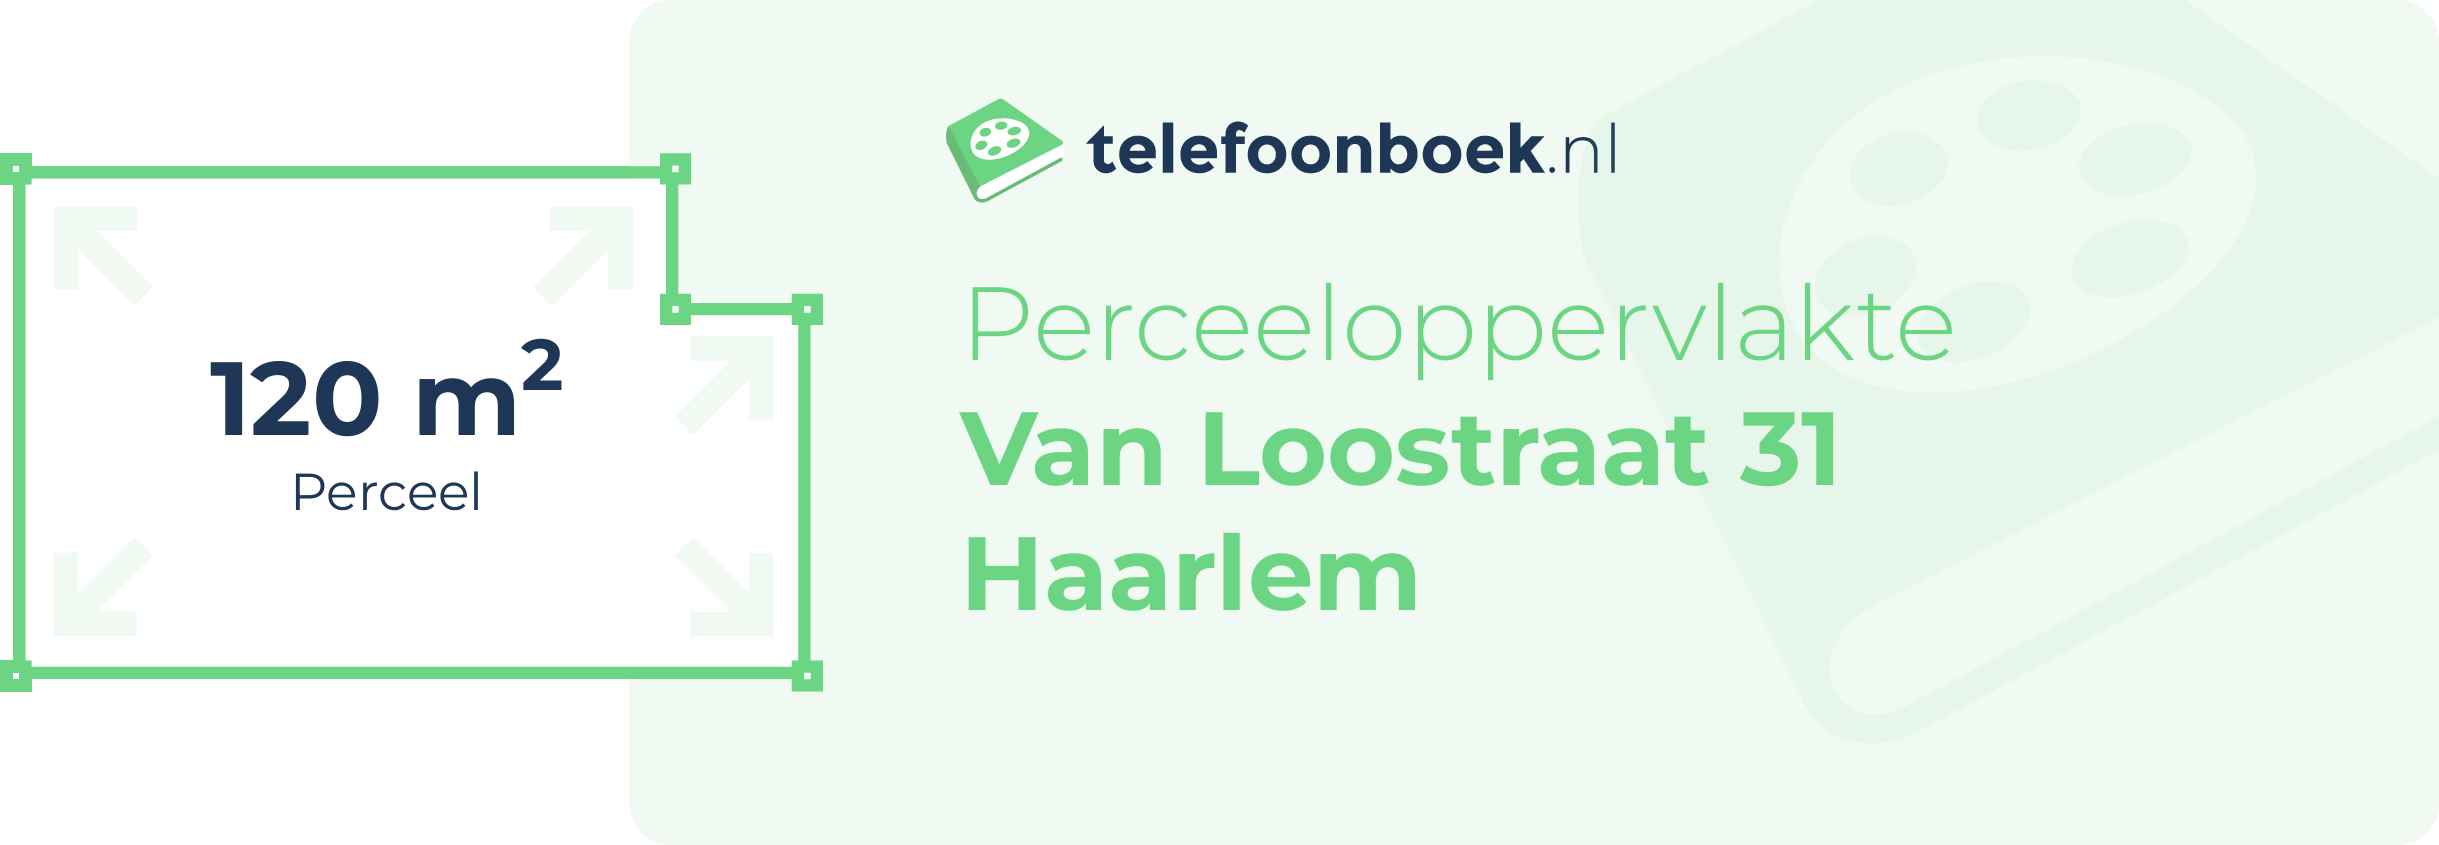 Perceeloppervlakte Van Loostraat 31 Haarlem